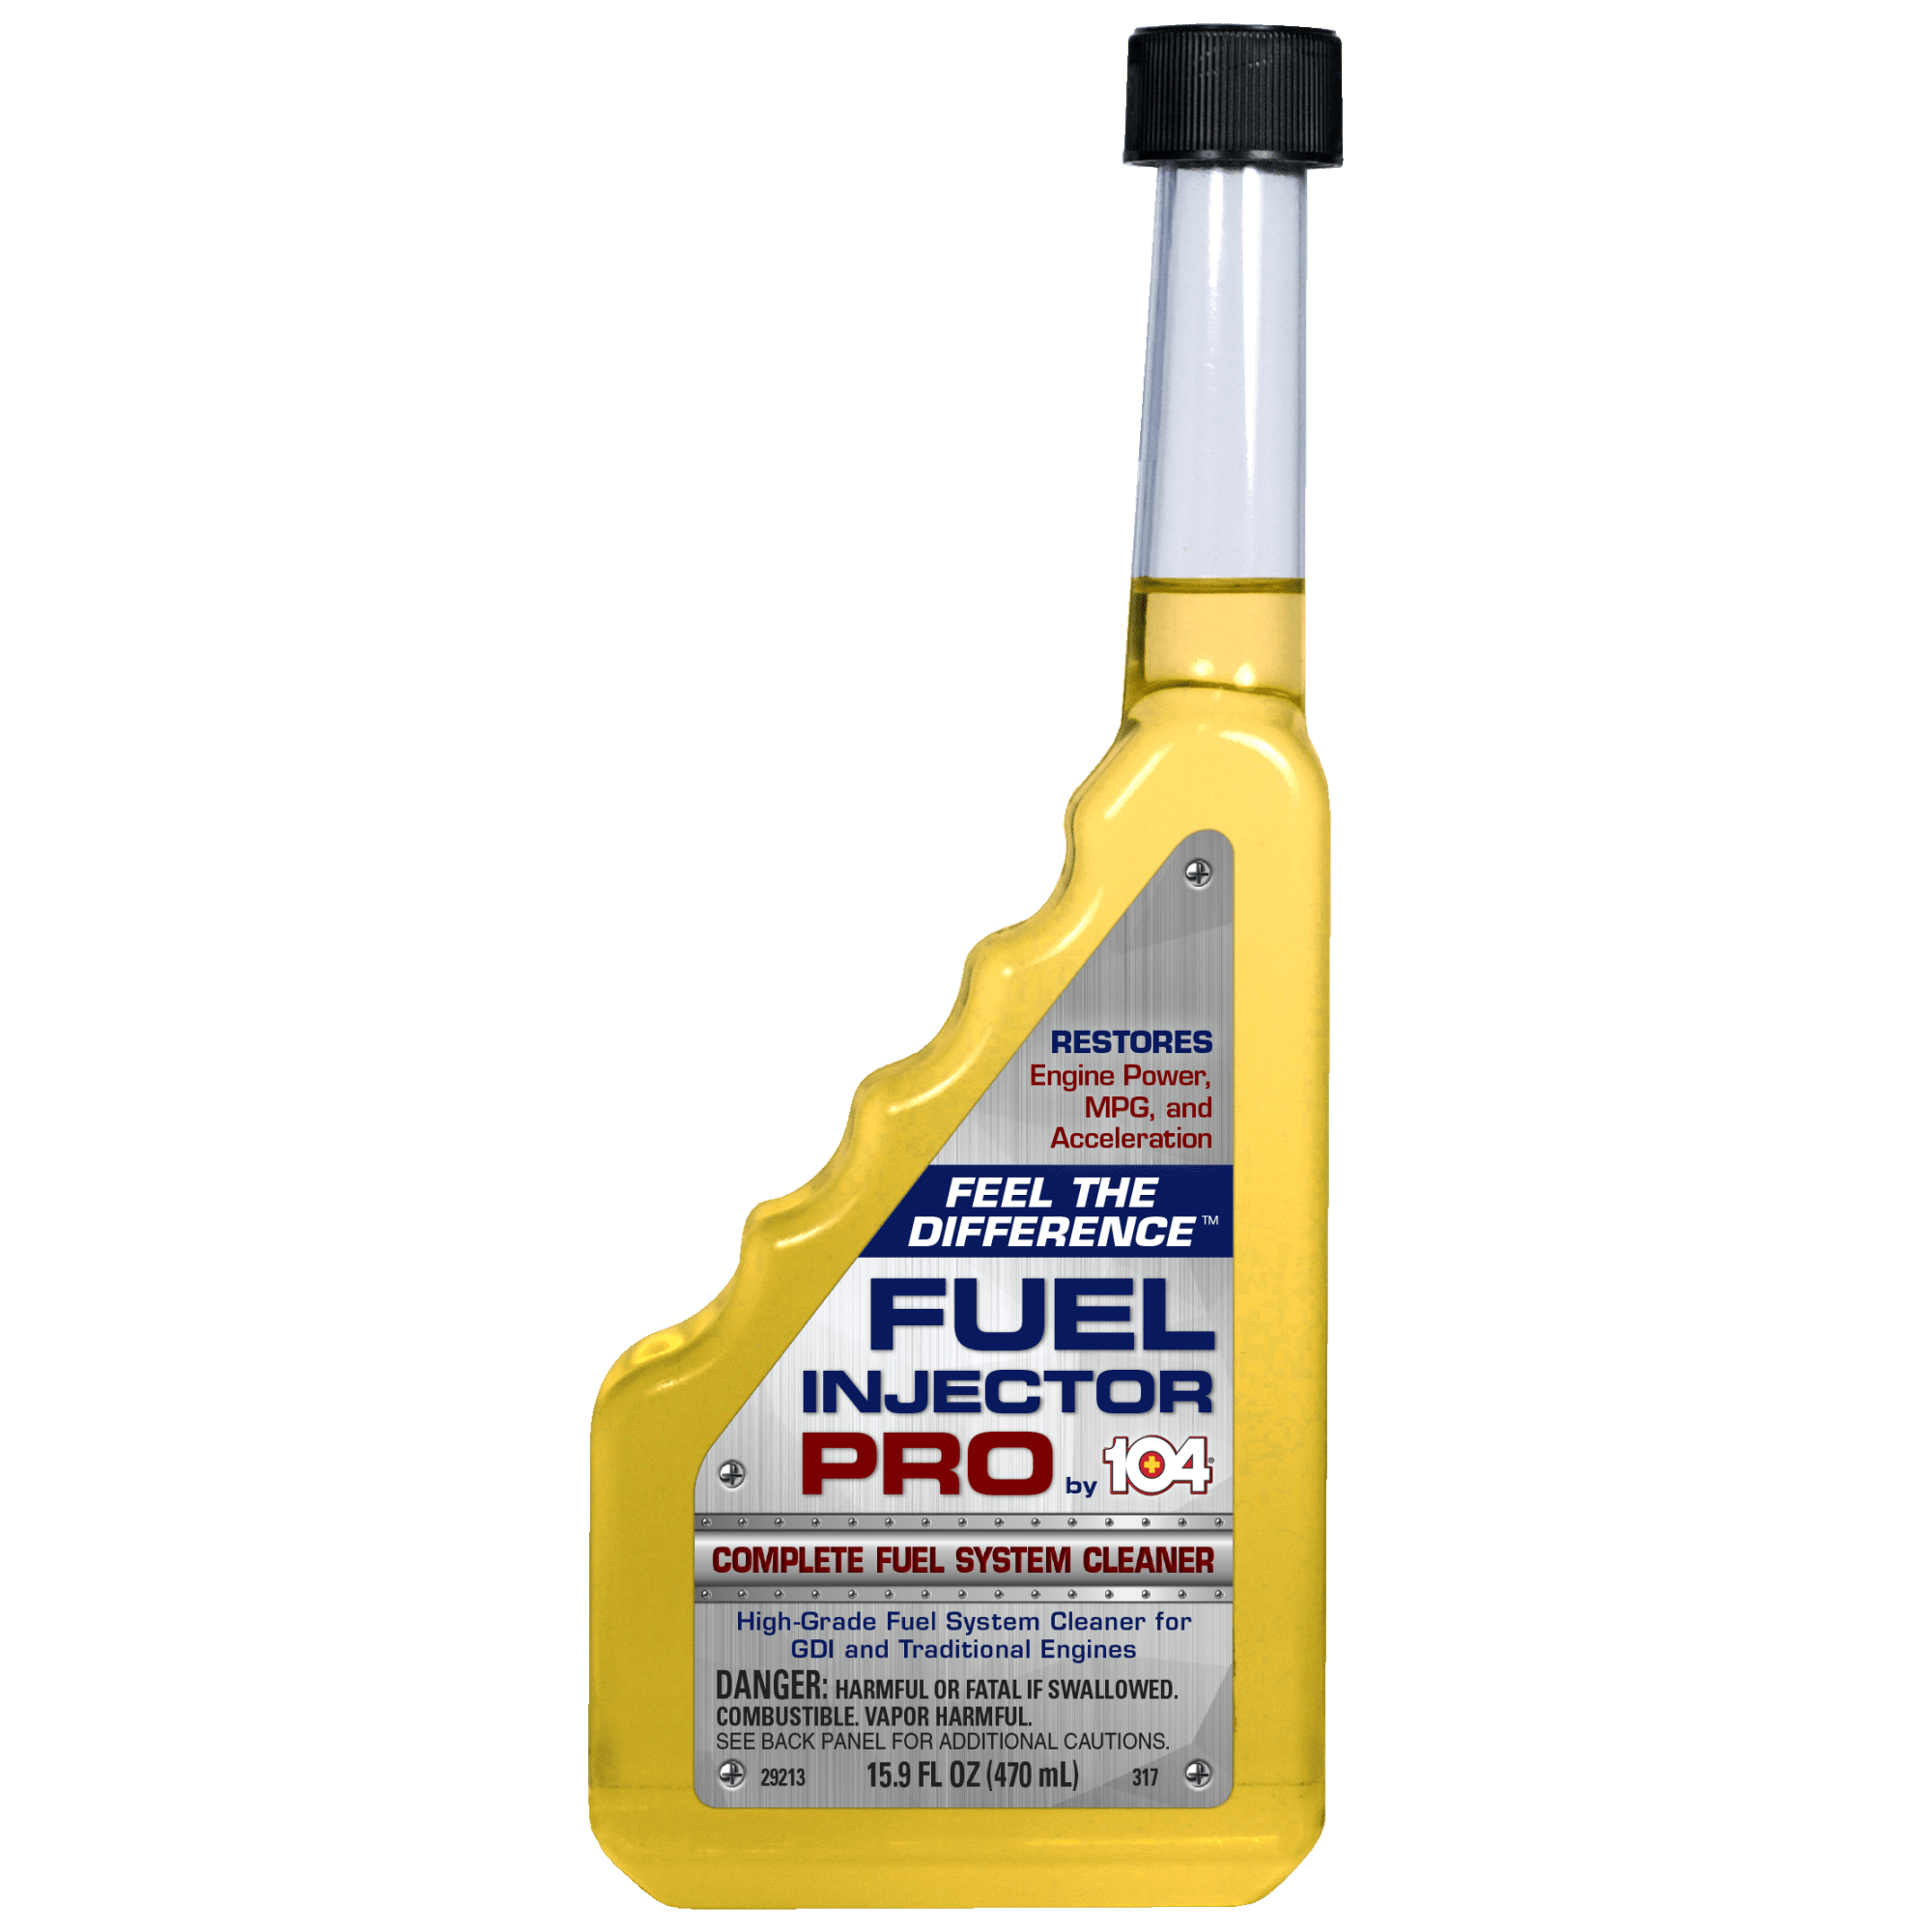 Diesel Turbo Cleaner, Profesional